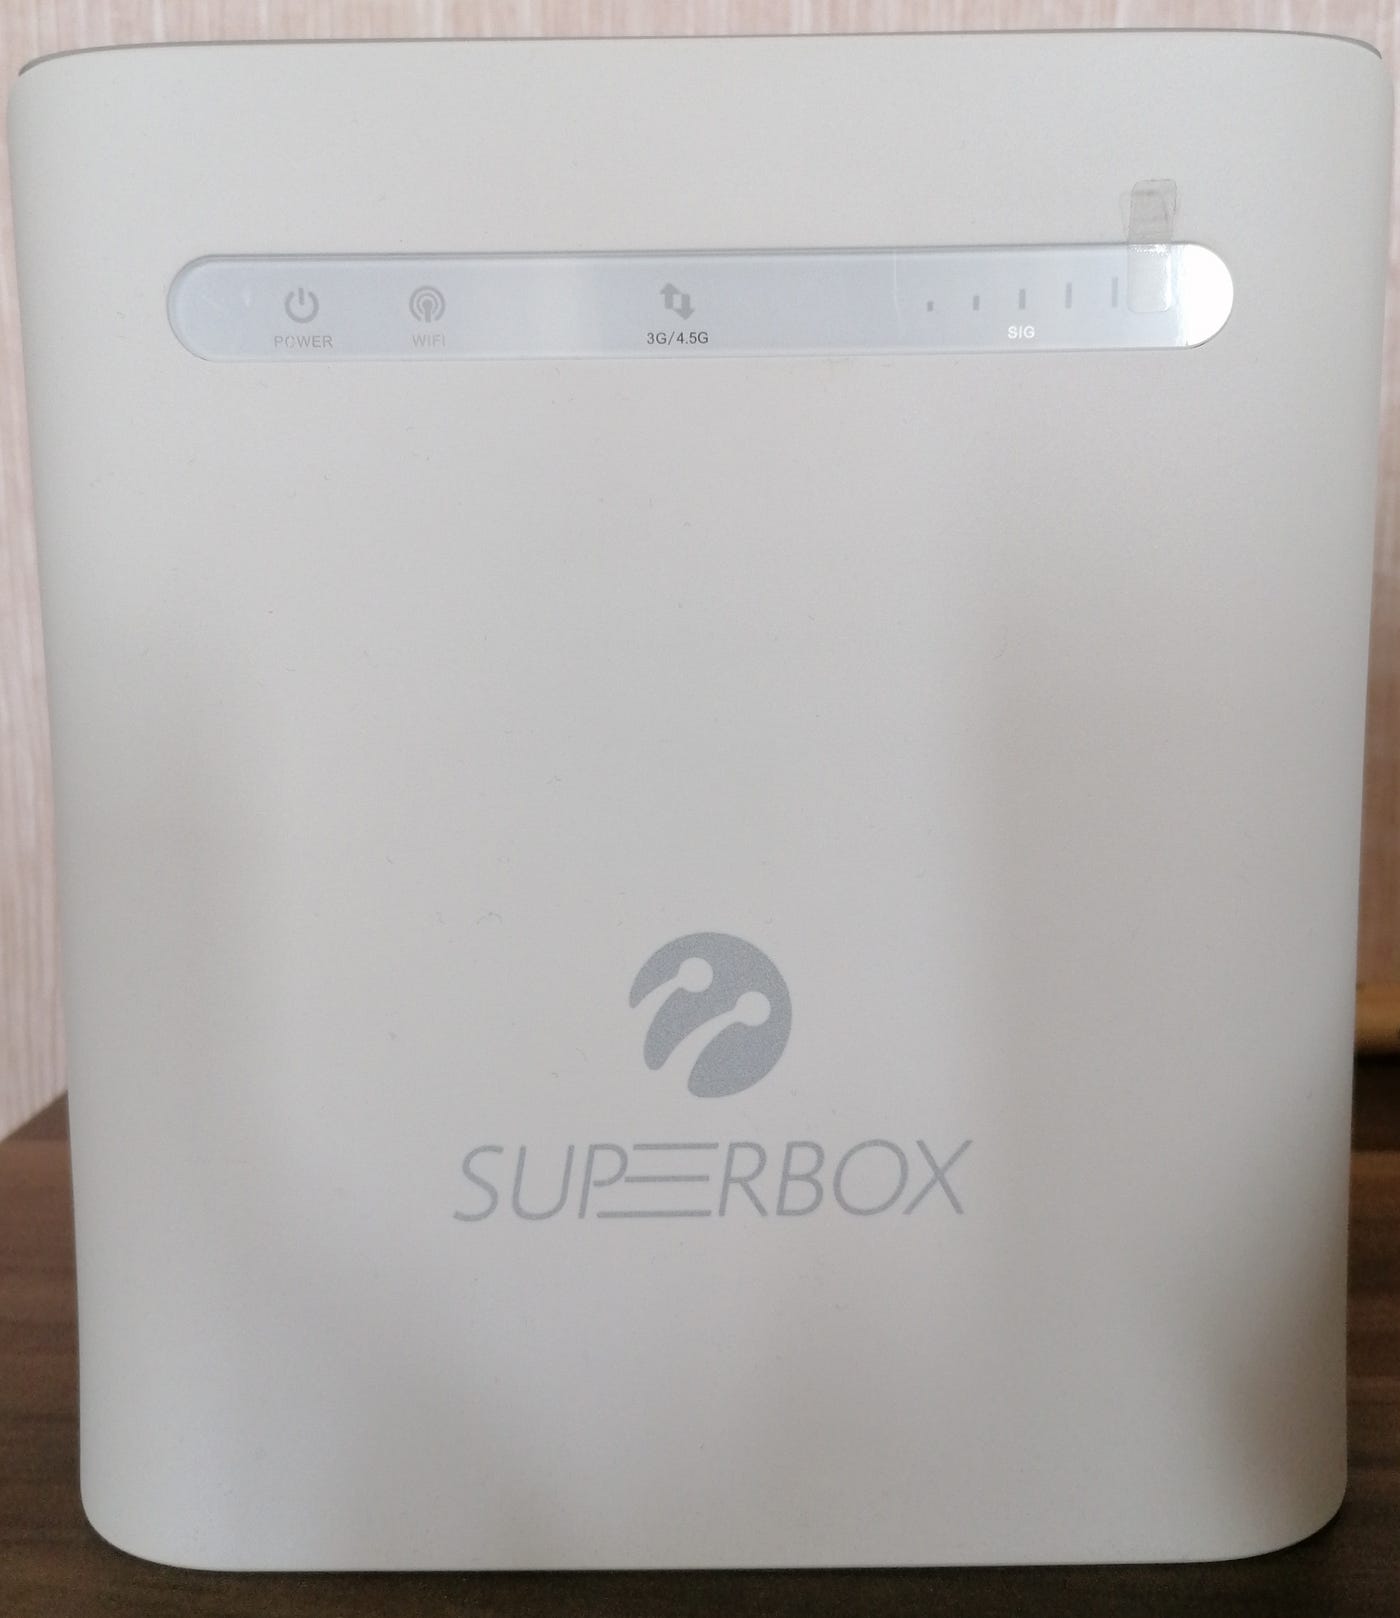 Turkcell Superonline SuperBox. Pazarlama harikası mı yoksa gerçekten… | by  CAN PEKSÖZ | Türkçe Yayın | Medium